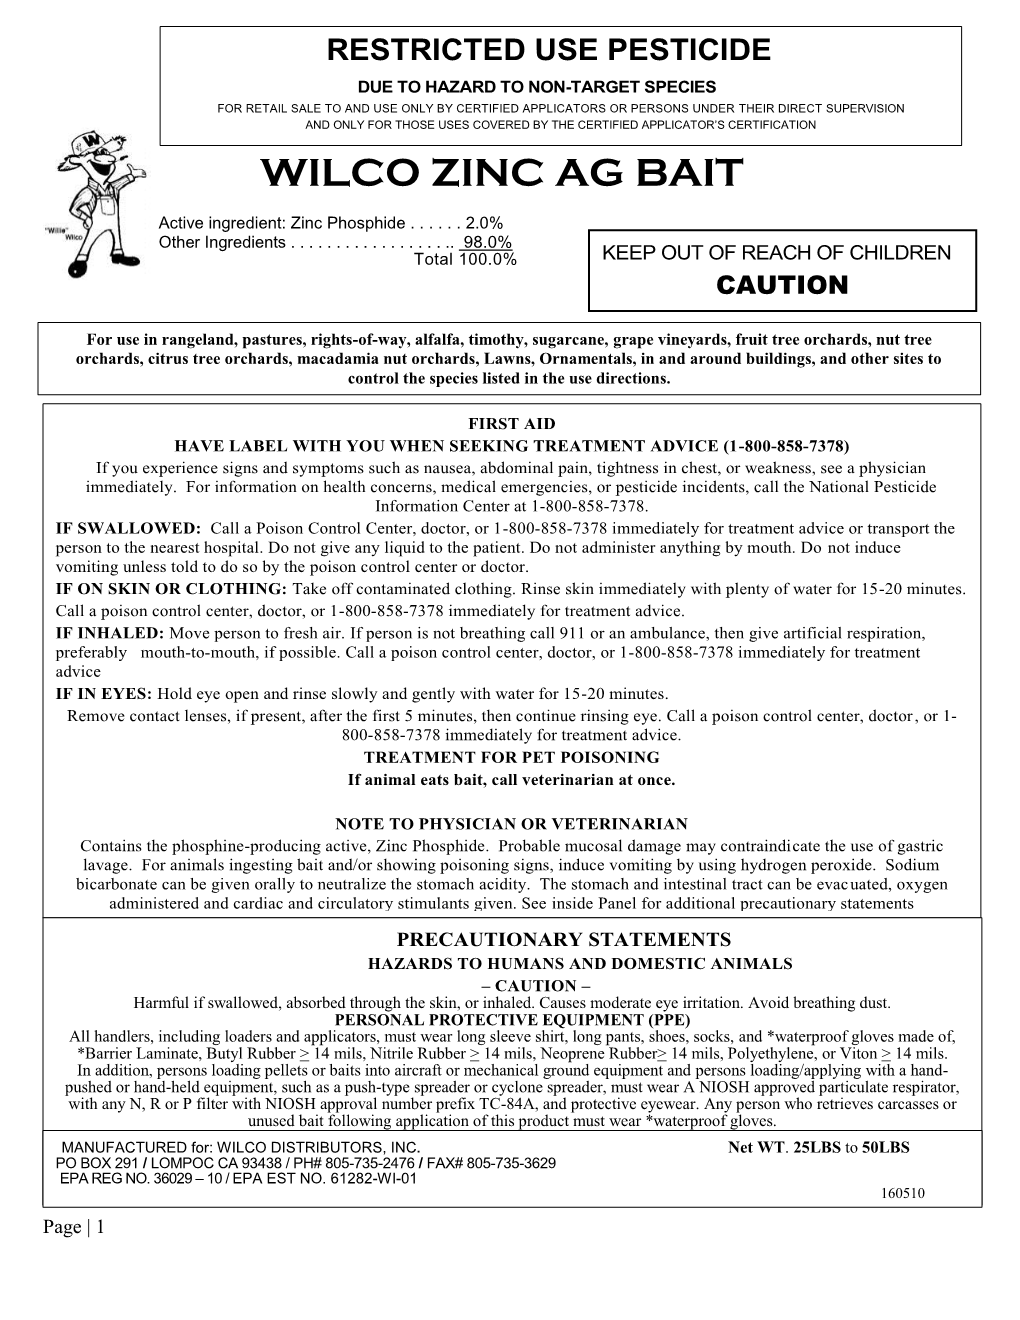 Wilco Zinc Ag Bait